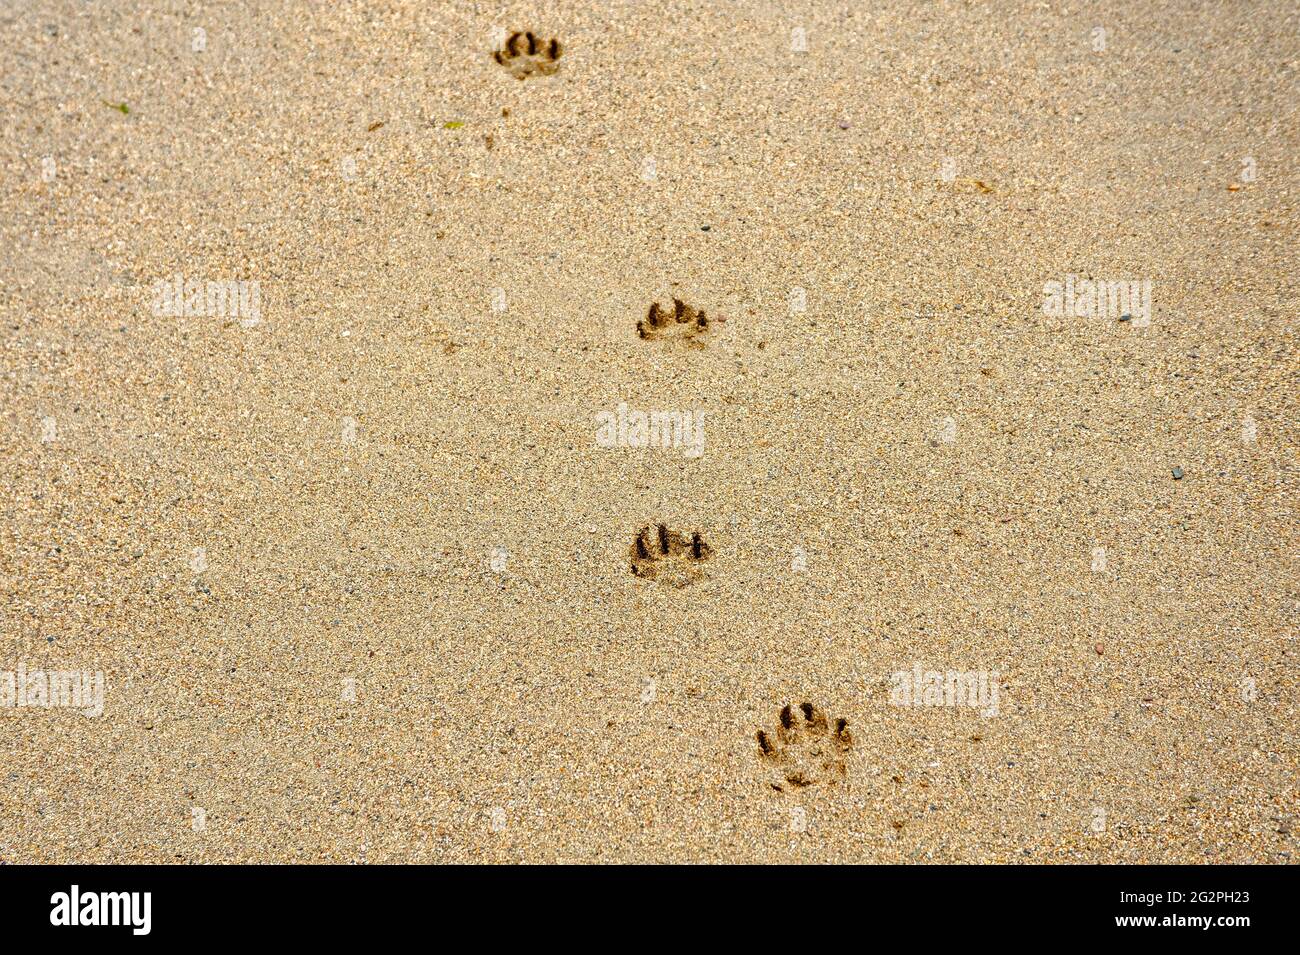 Zampa del cane impronte nella sabbia Foto Stock